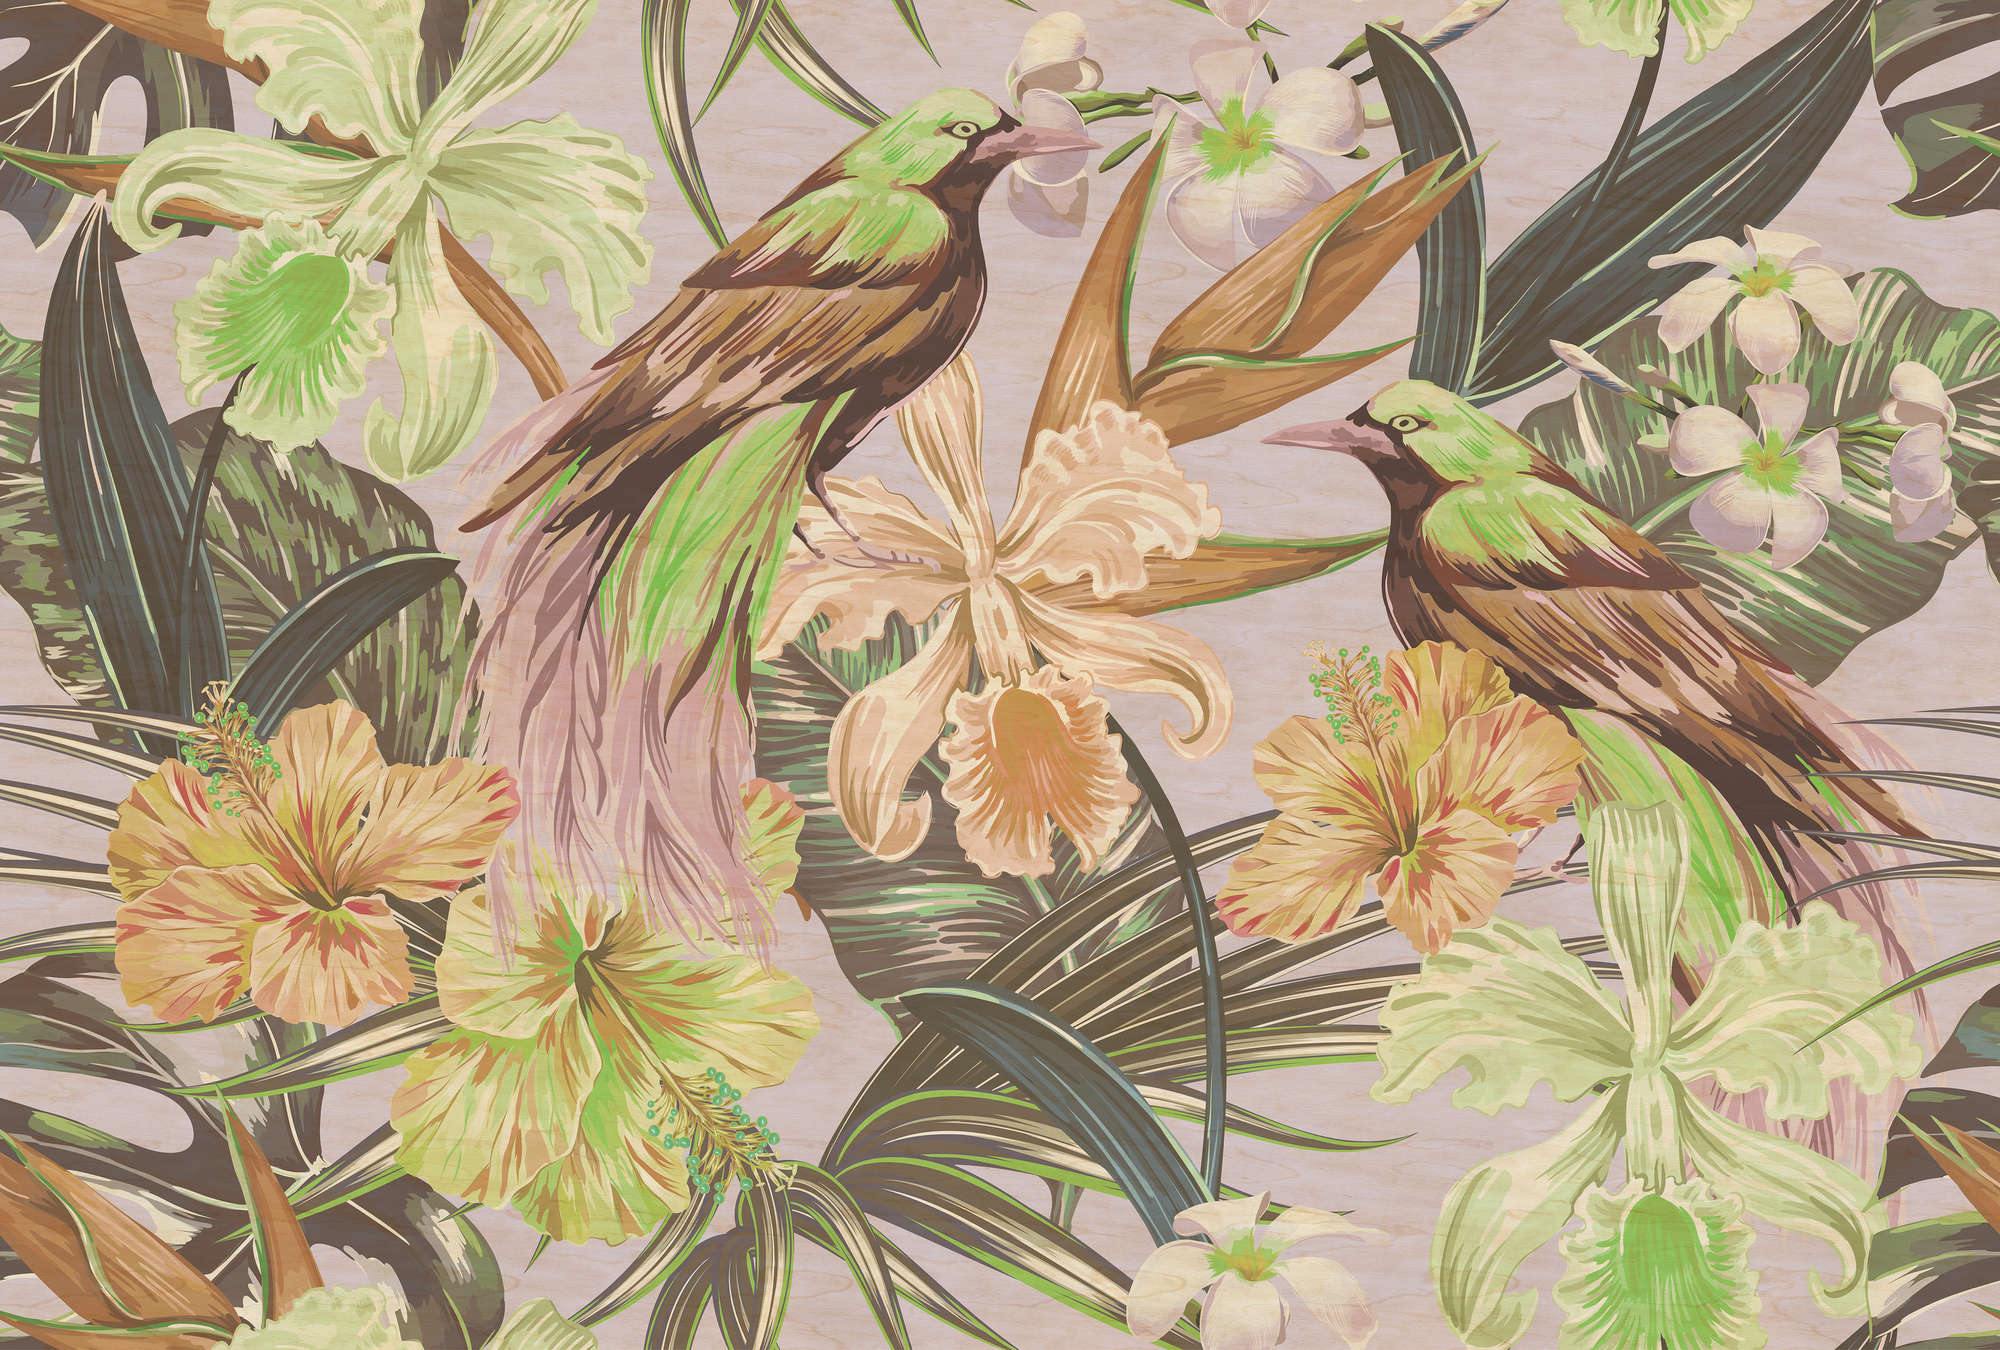             Exotische vogels 2 - Digital behang exotische vogels & planten- Kras textuur - Beige, Groen | Premium gladde fleece
        